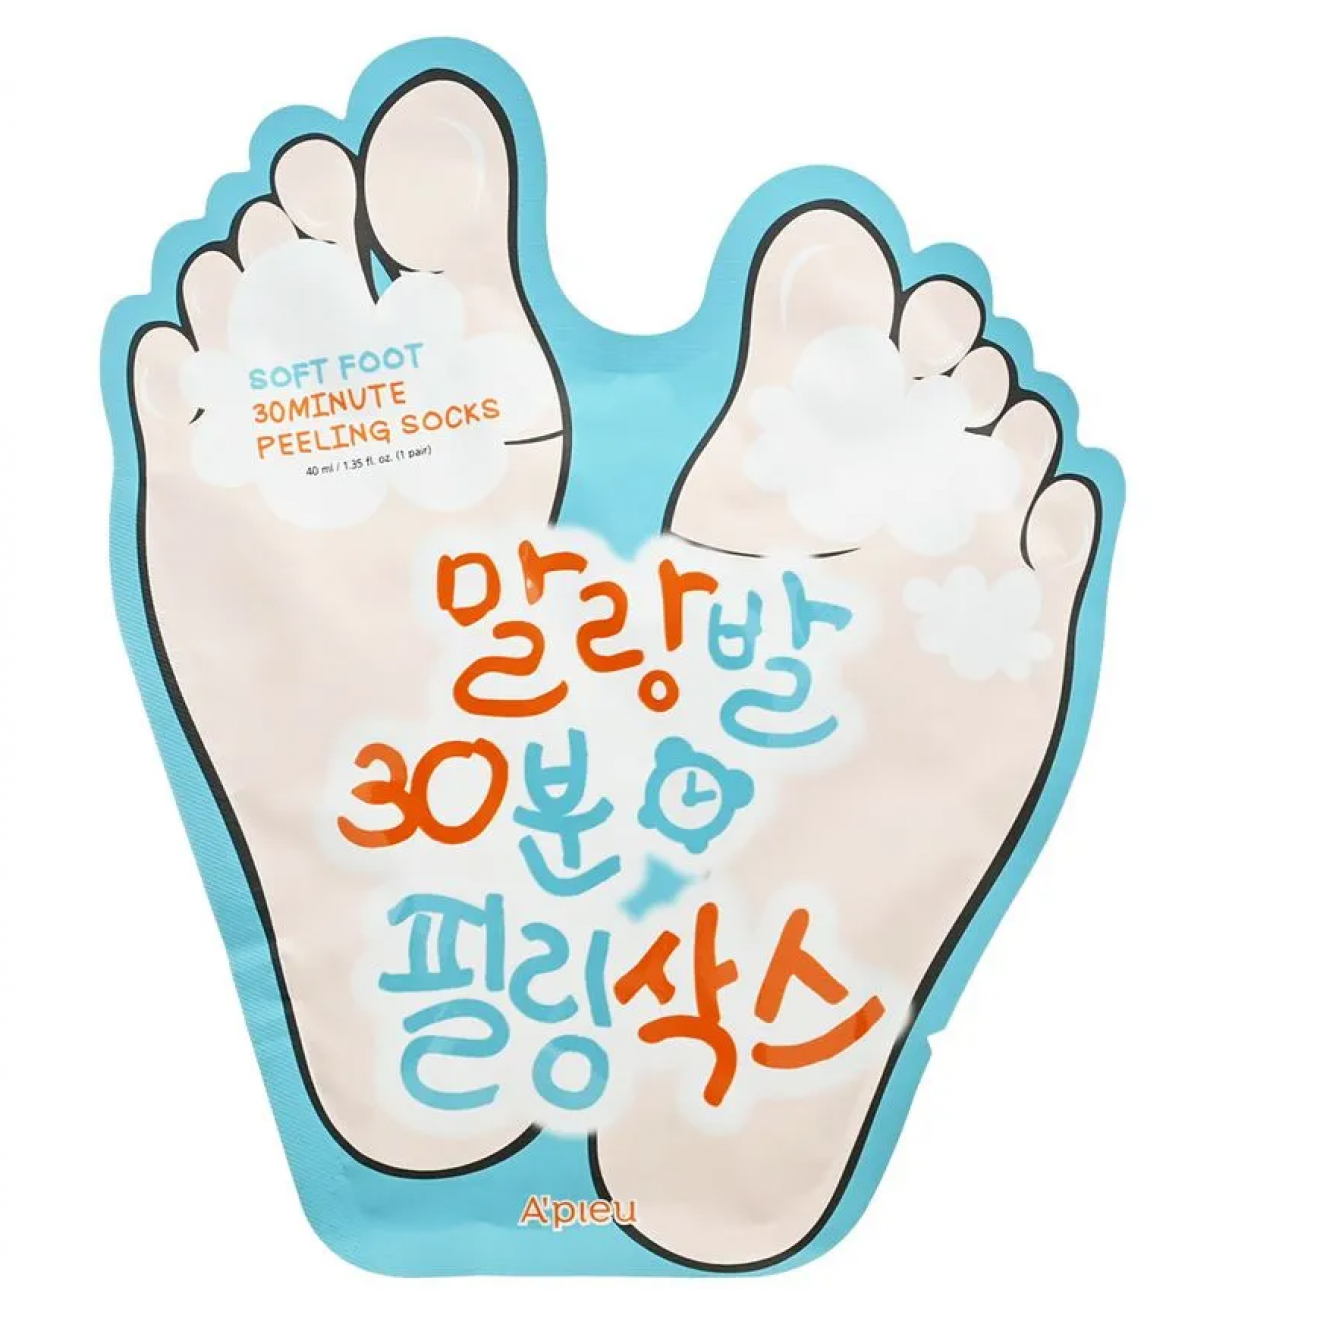 Sosete peeling pentru picioare - Apieu, Soft Foot 30 Minute Peeling Socks